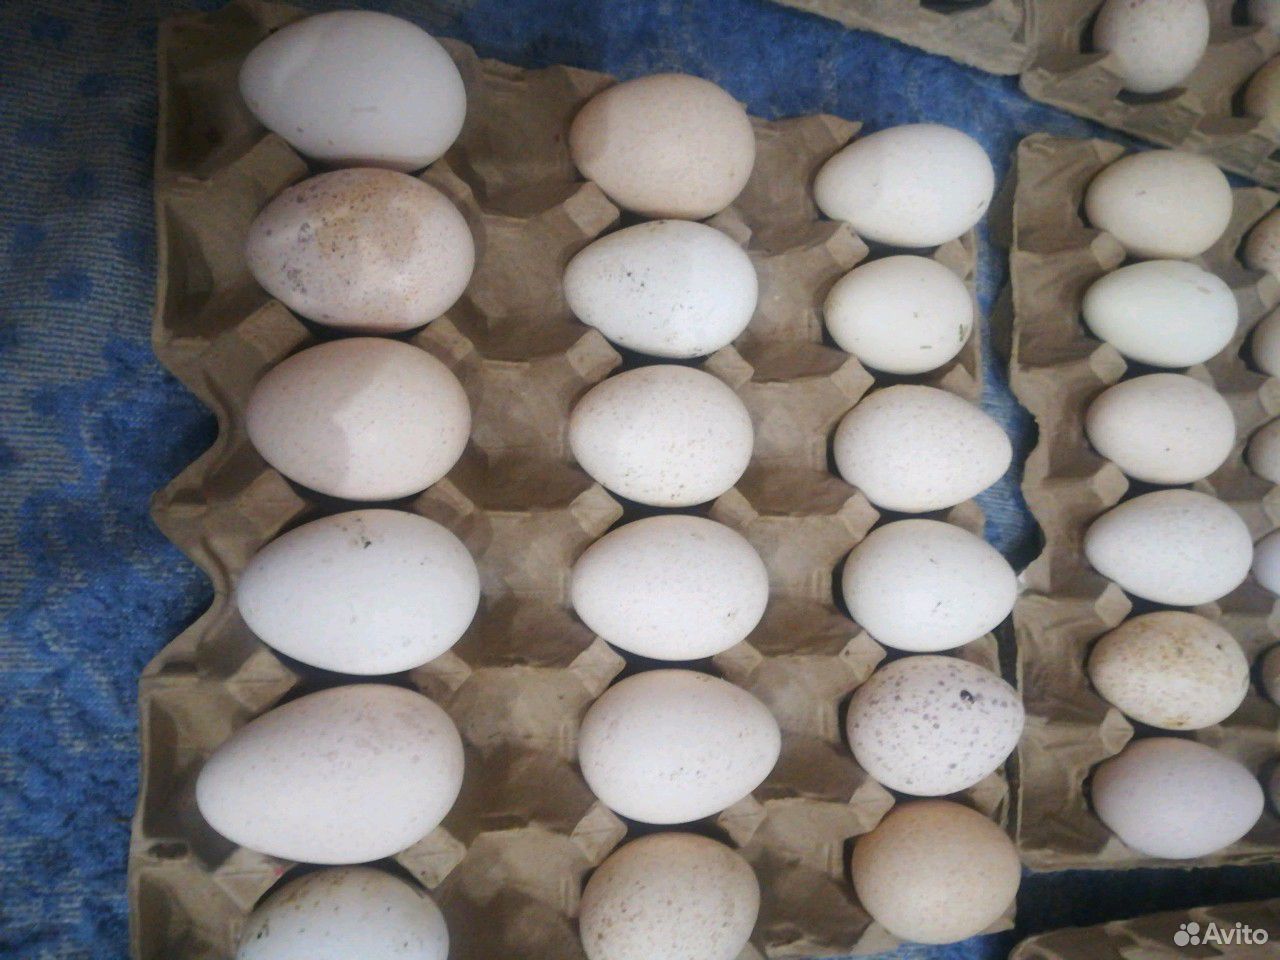 Купить инкубационное яйцо в волгограде. Инкубационное яйцо индюшки. Яйцо белой индюшки. Продажа инкубационного яйца индейки. Белая широкогрудая индейка.